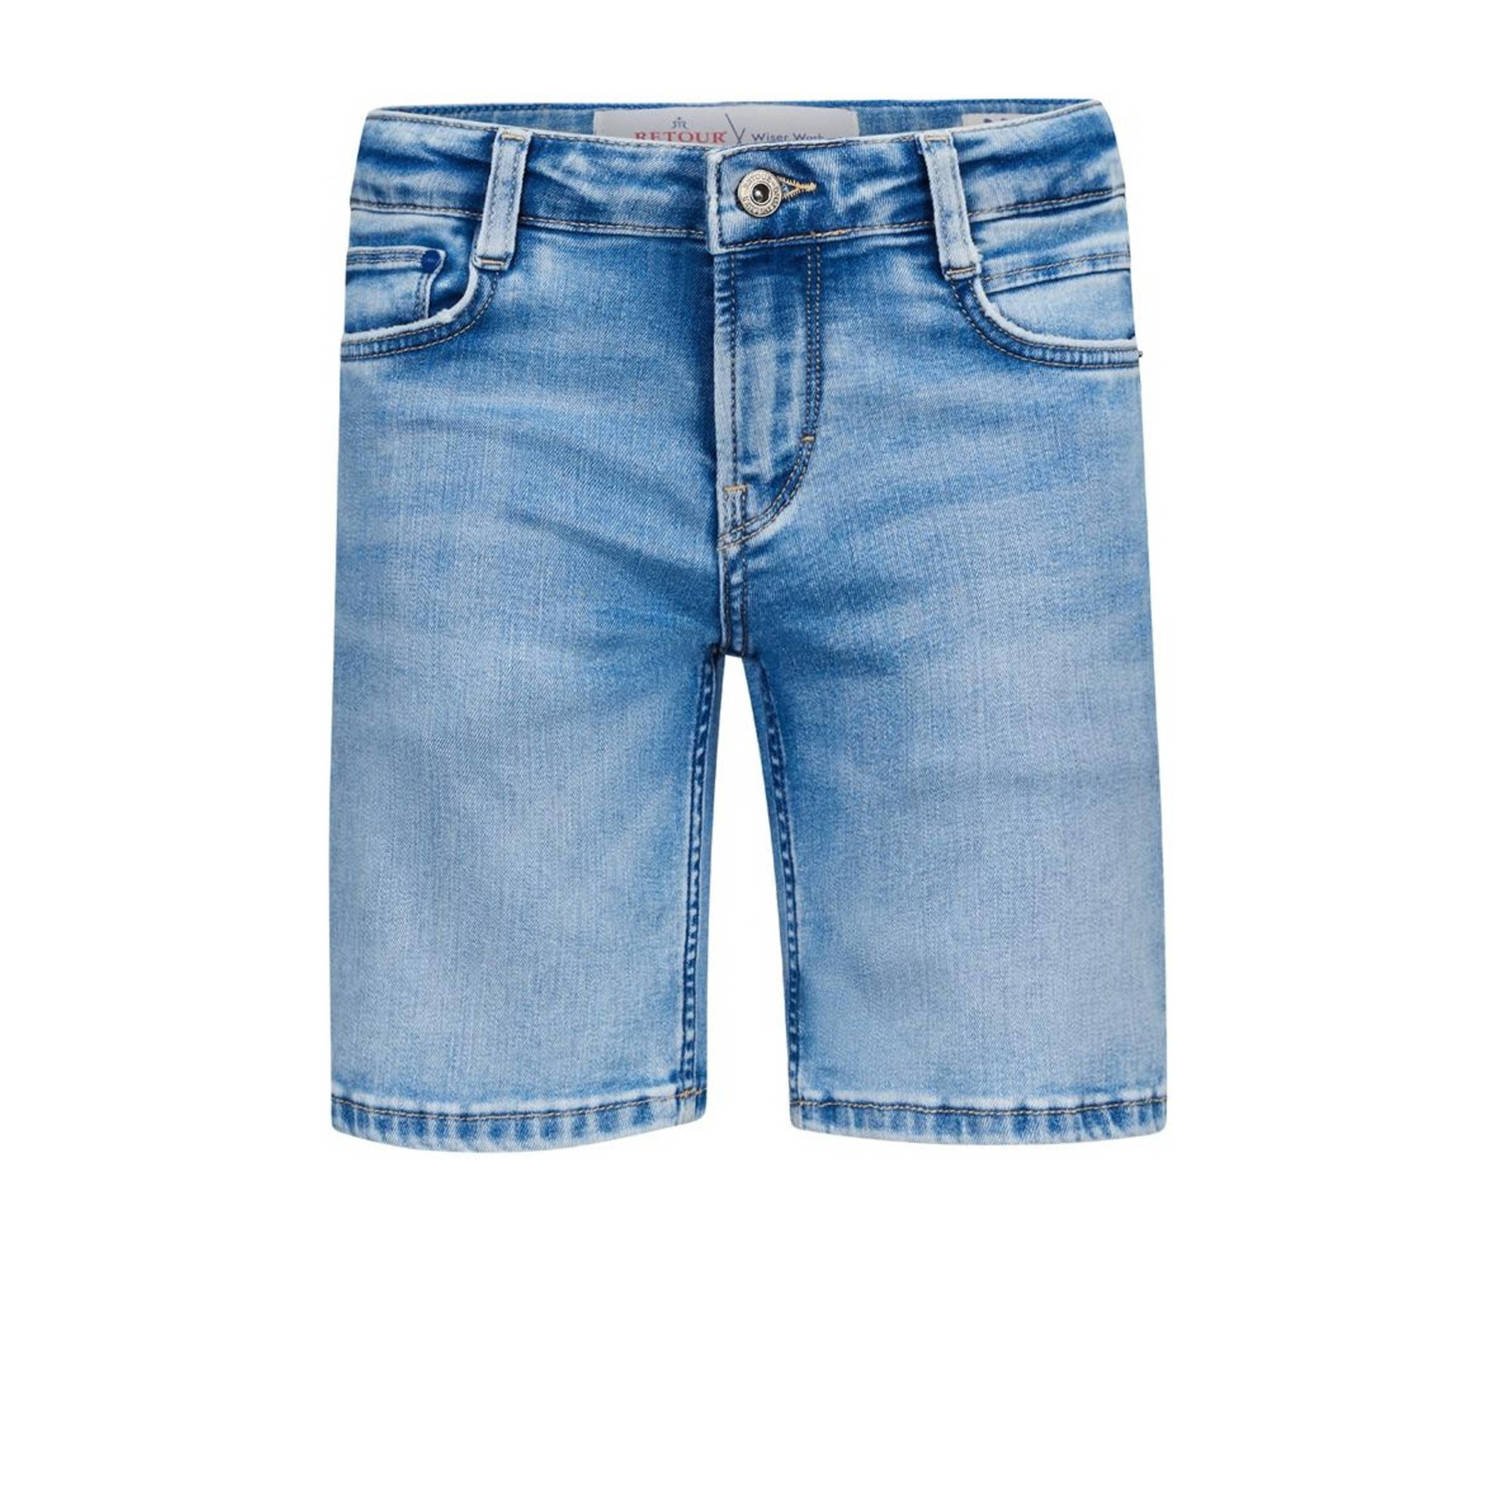 Retour Jeans denim short Reven Vintage light blue denim Korte broek Blauw Jongens Stretchdenim 122